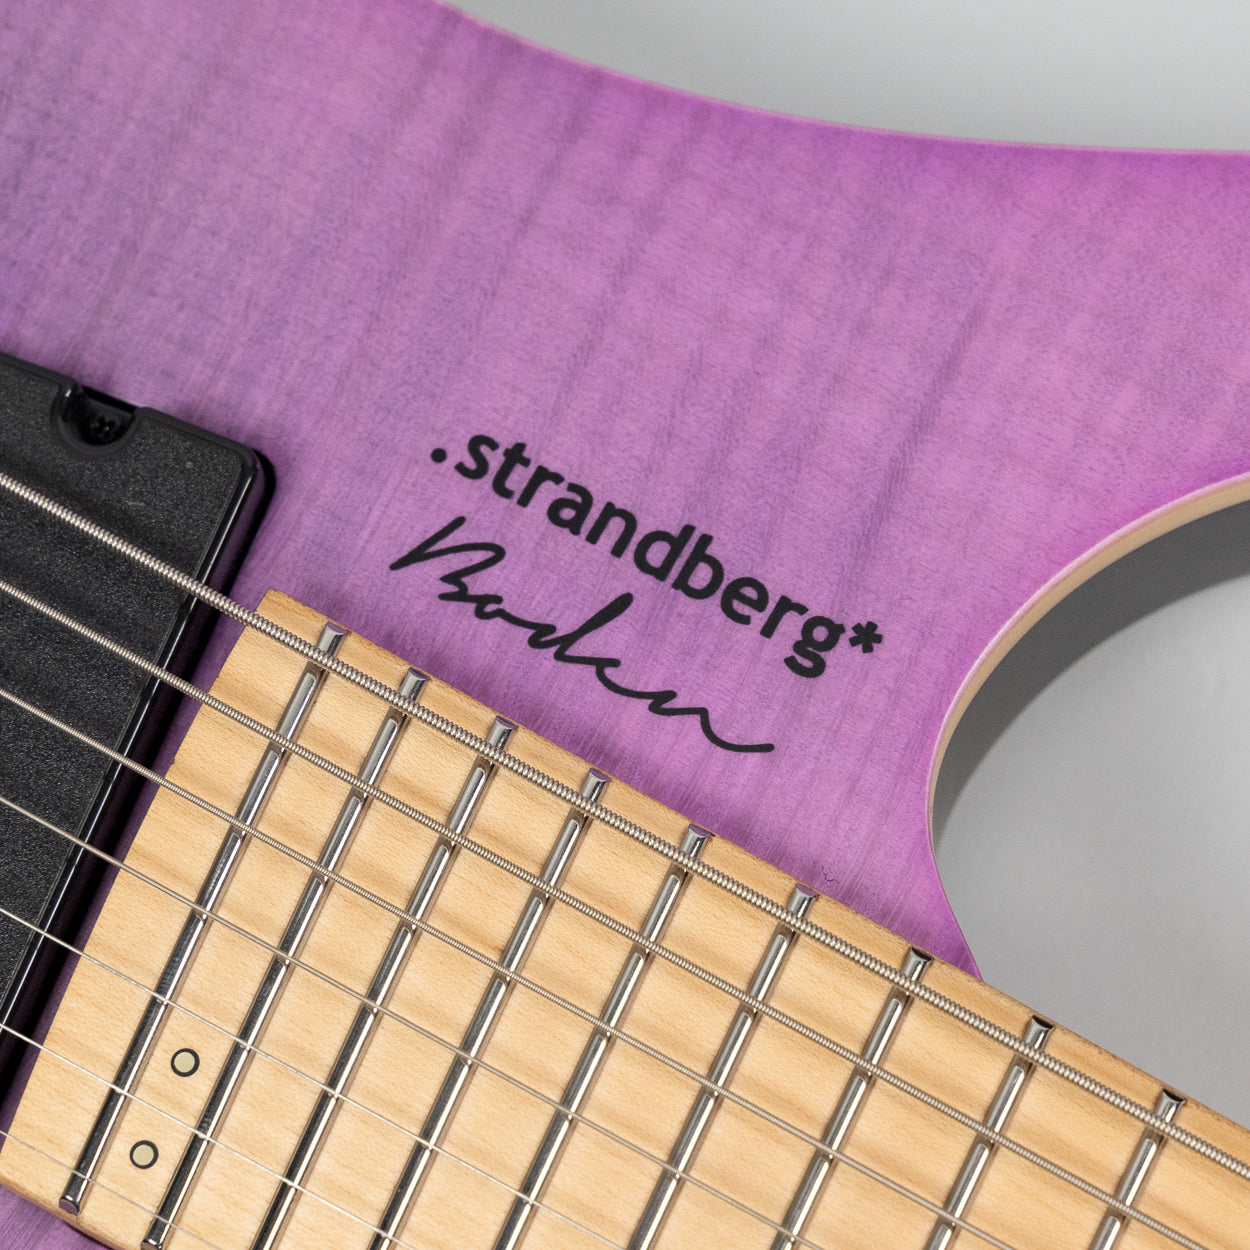 .strandberg* Boden Standard NX 7 in Purple (C2206628)